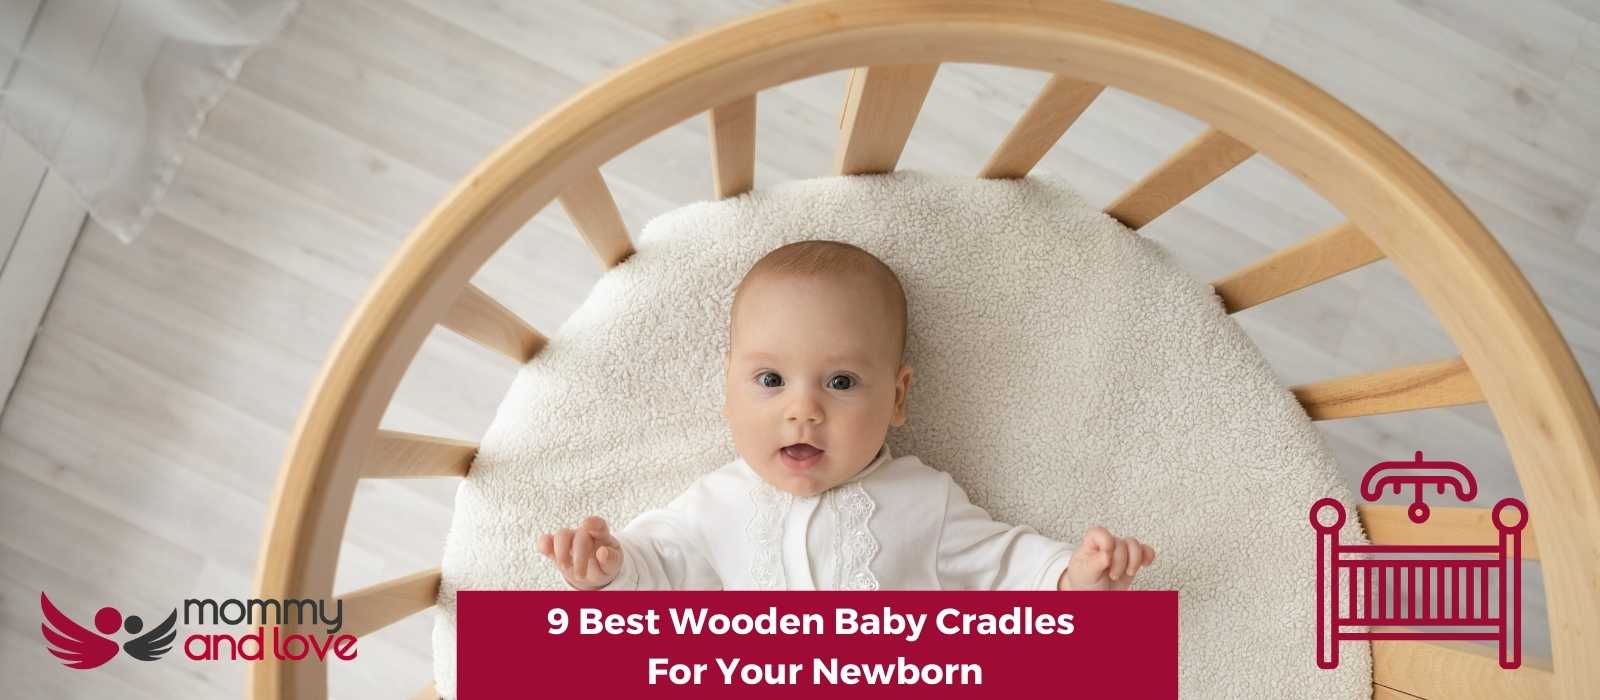 9 Best Wooden Baby Cradles For Your Newborn